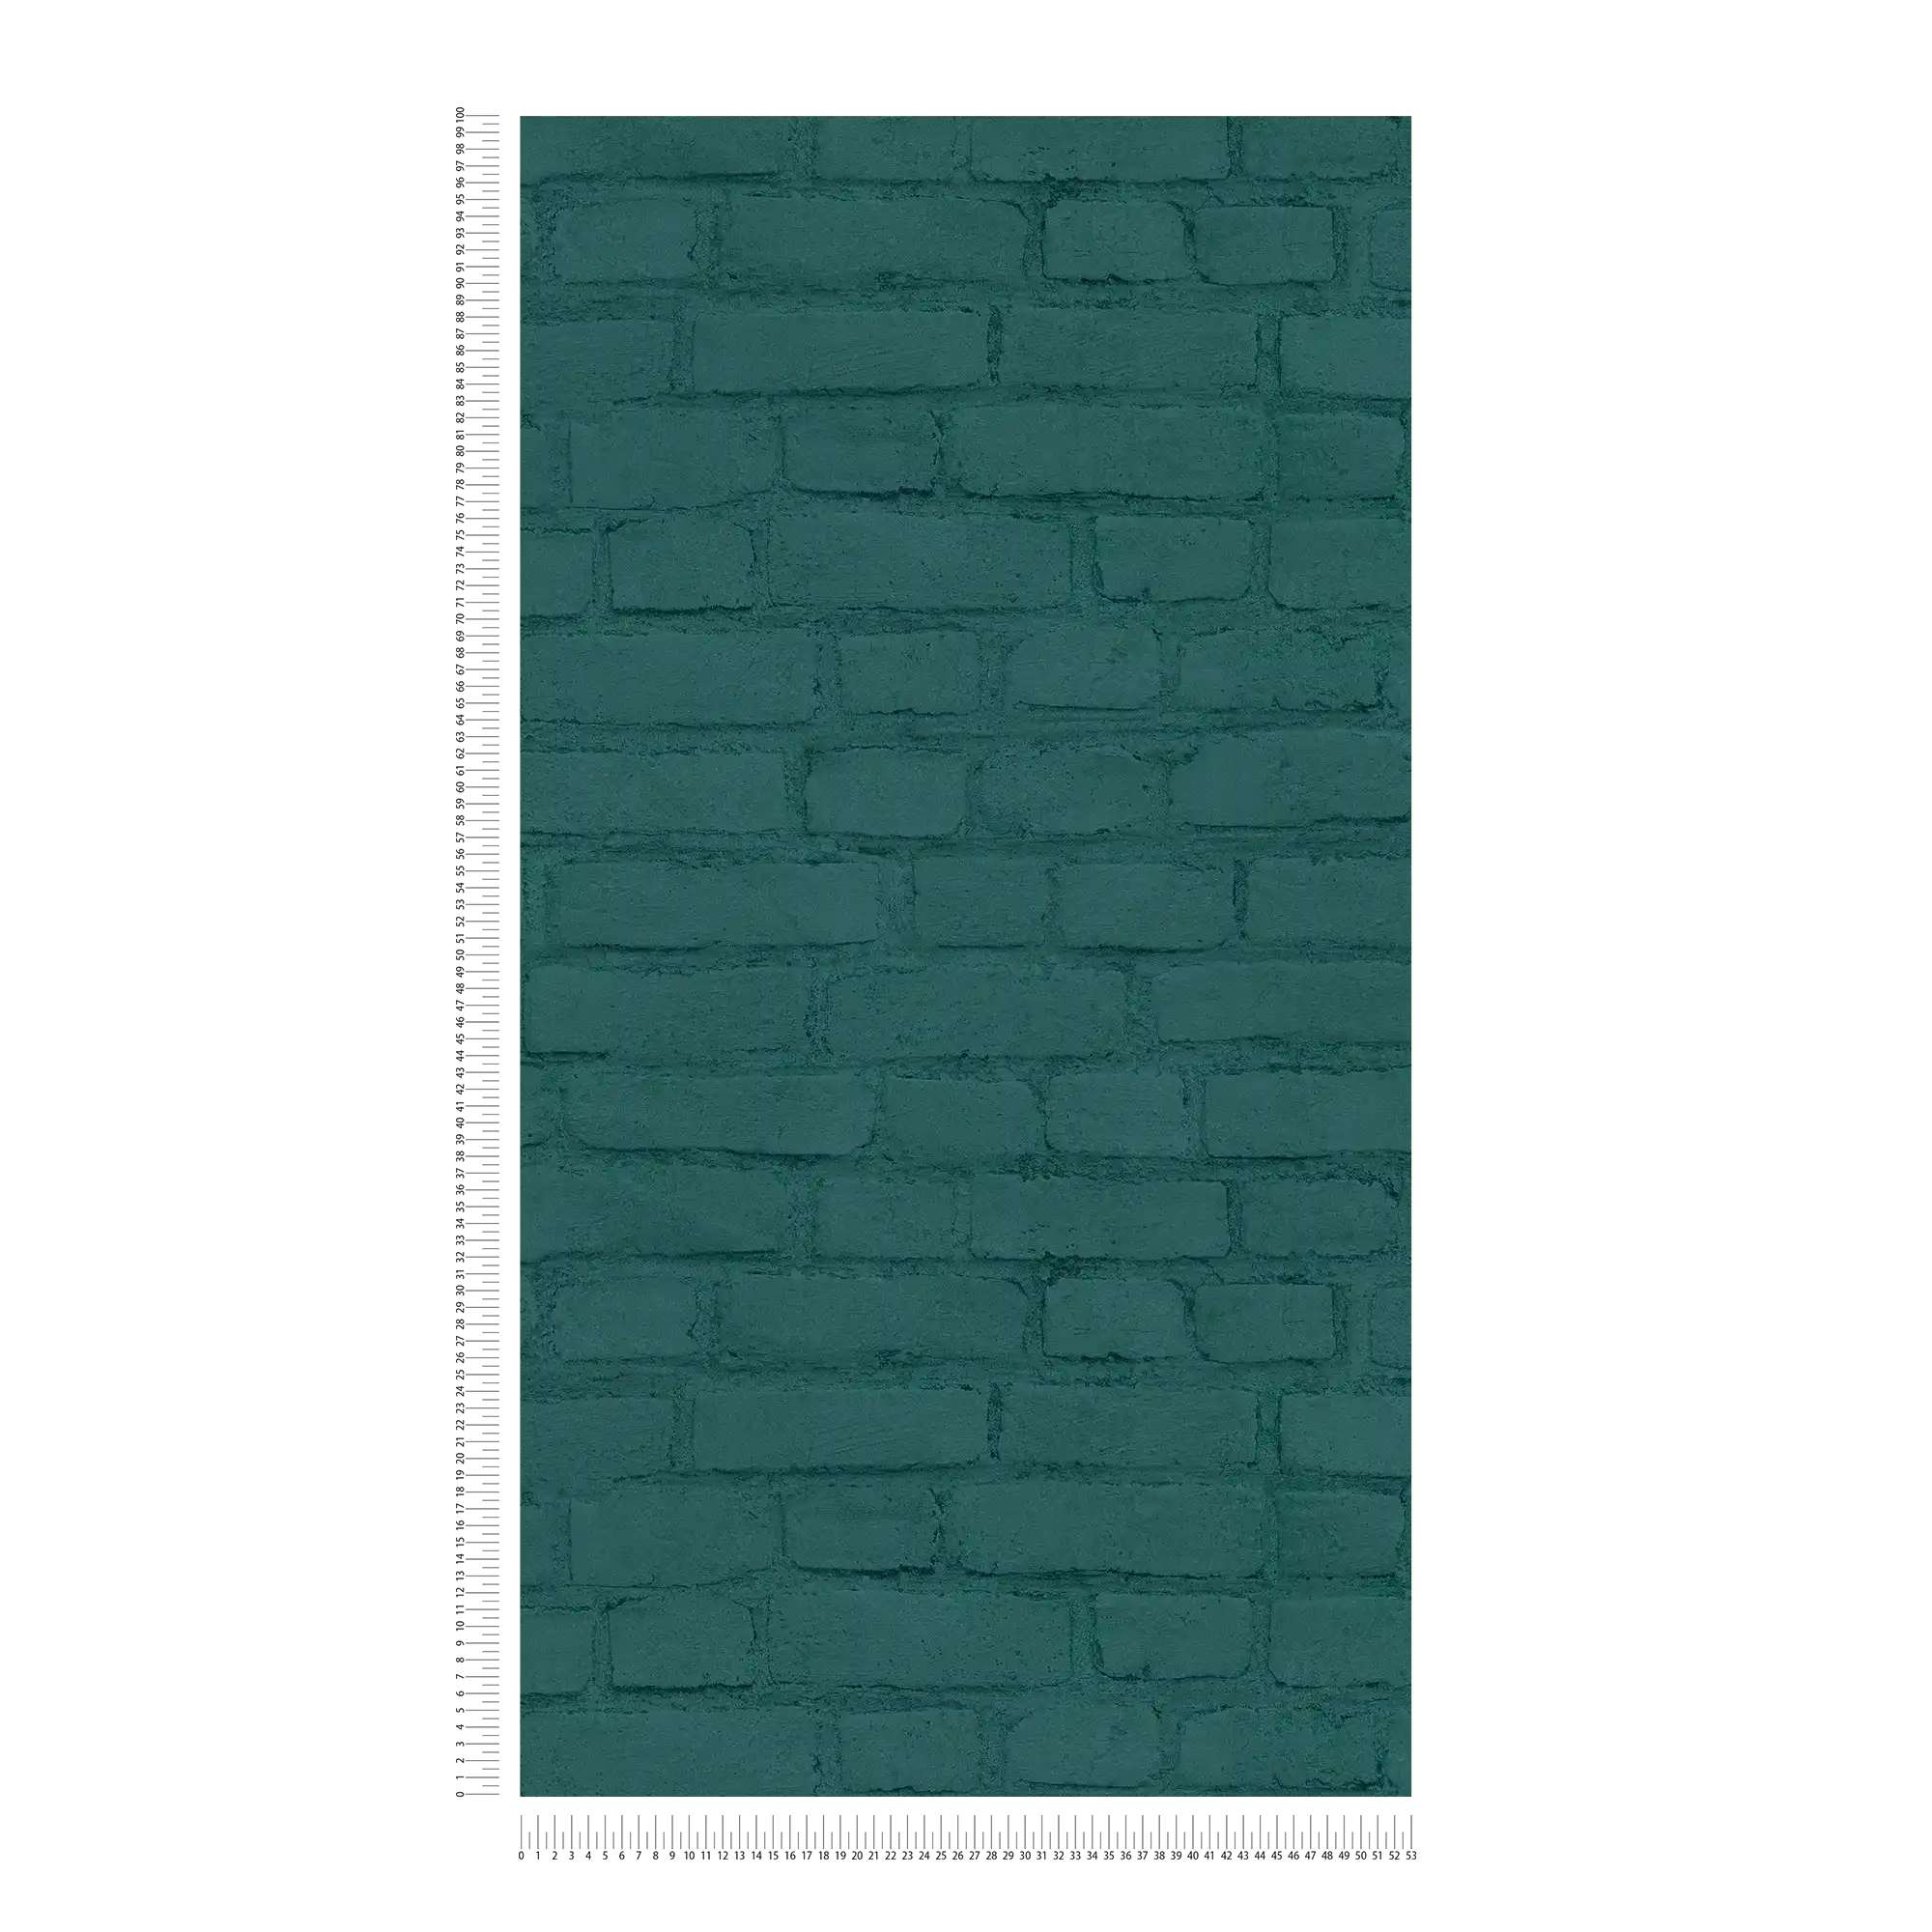             Stone wallpaper wall in clinker look - green
        